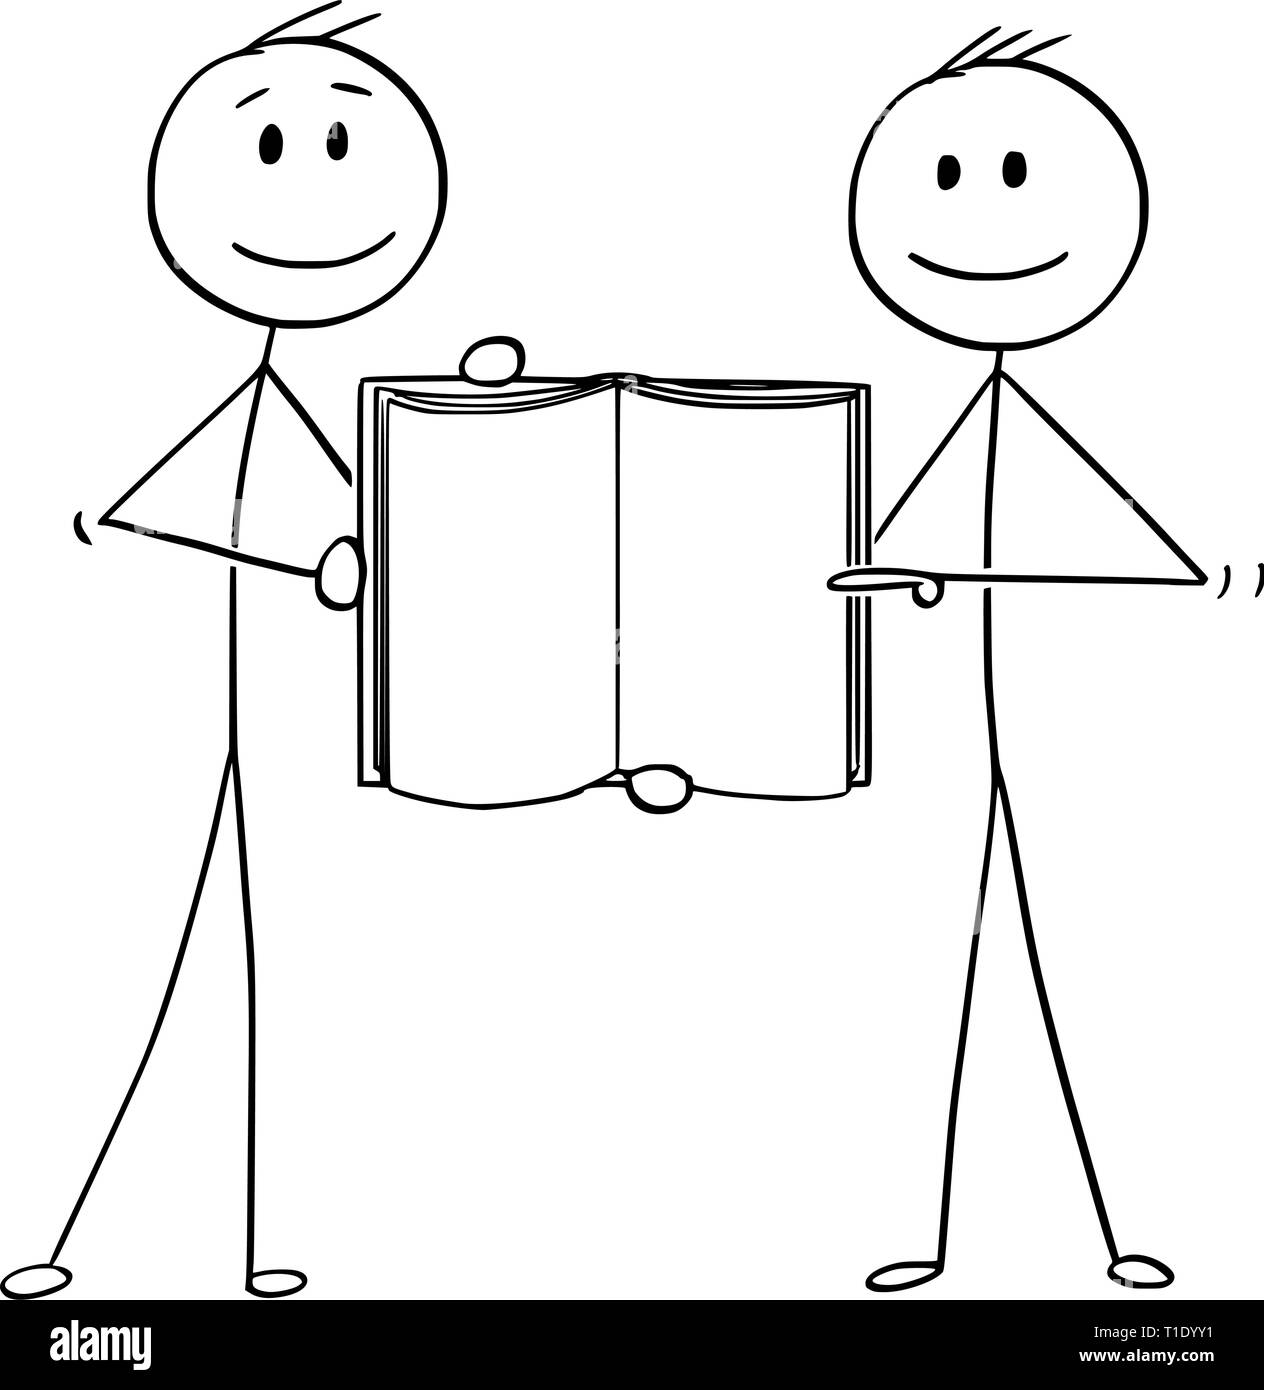 Cartoon Strichmännchen Zeichnung konzeptuelle Abbildung von zwei Männern oder Geschäftsleute zusammen halten offenes Buch mit leeren Seiten. Stock Vektor